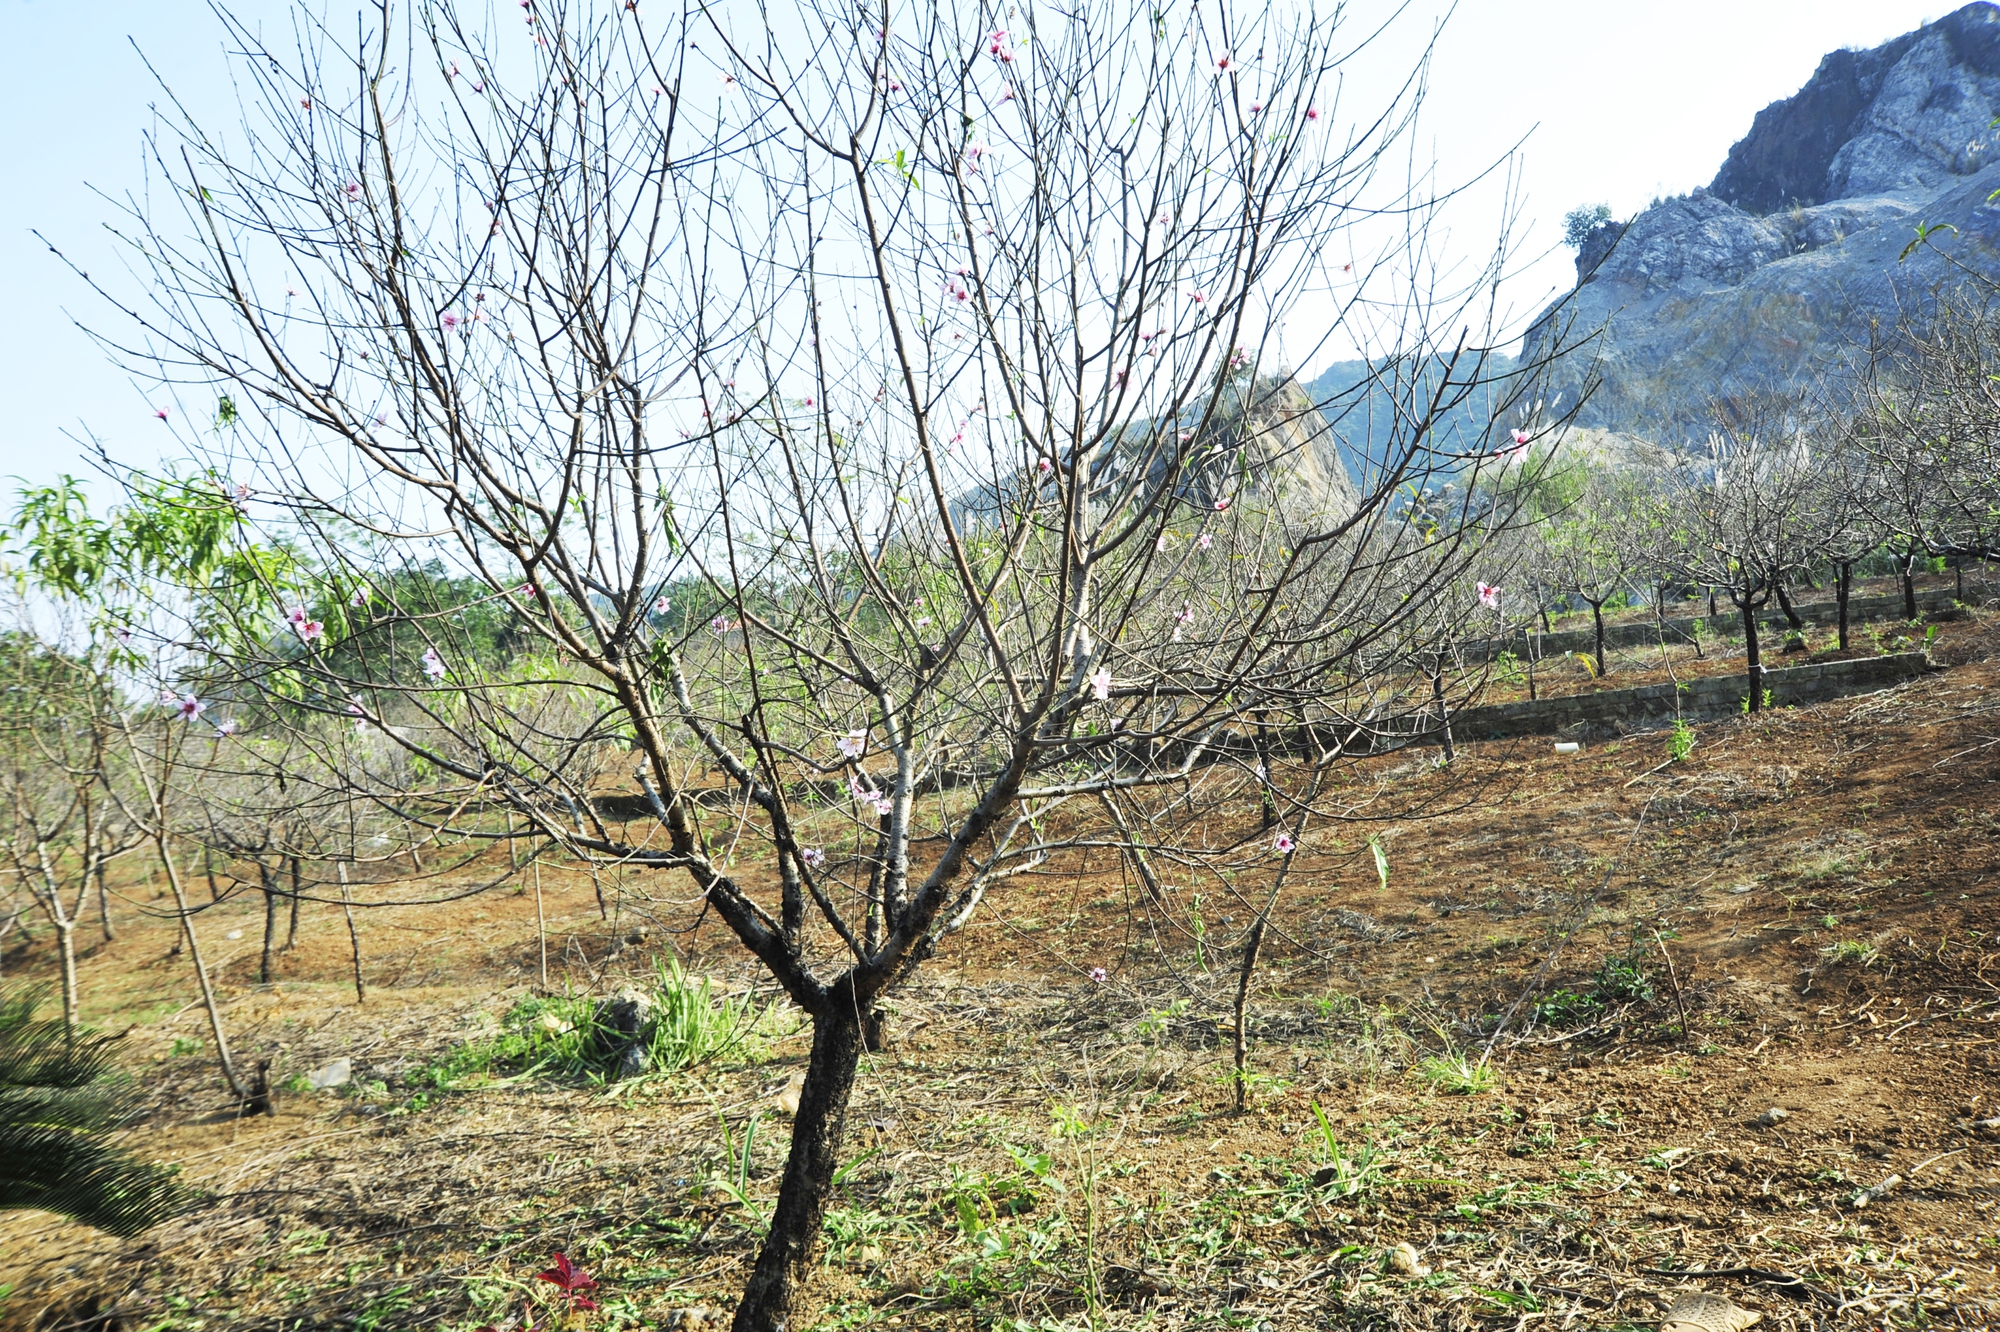 Hoa đào năm nay nở chậm, chủ vườn tư vấn cho khách cách chọn cây ưng ý chơi Tết - Ảnh 12.